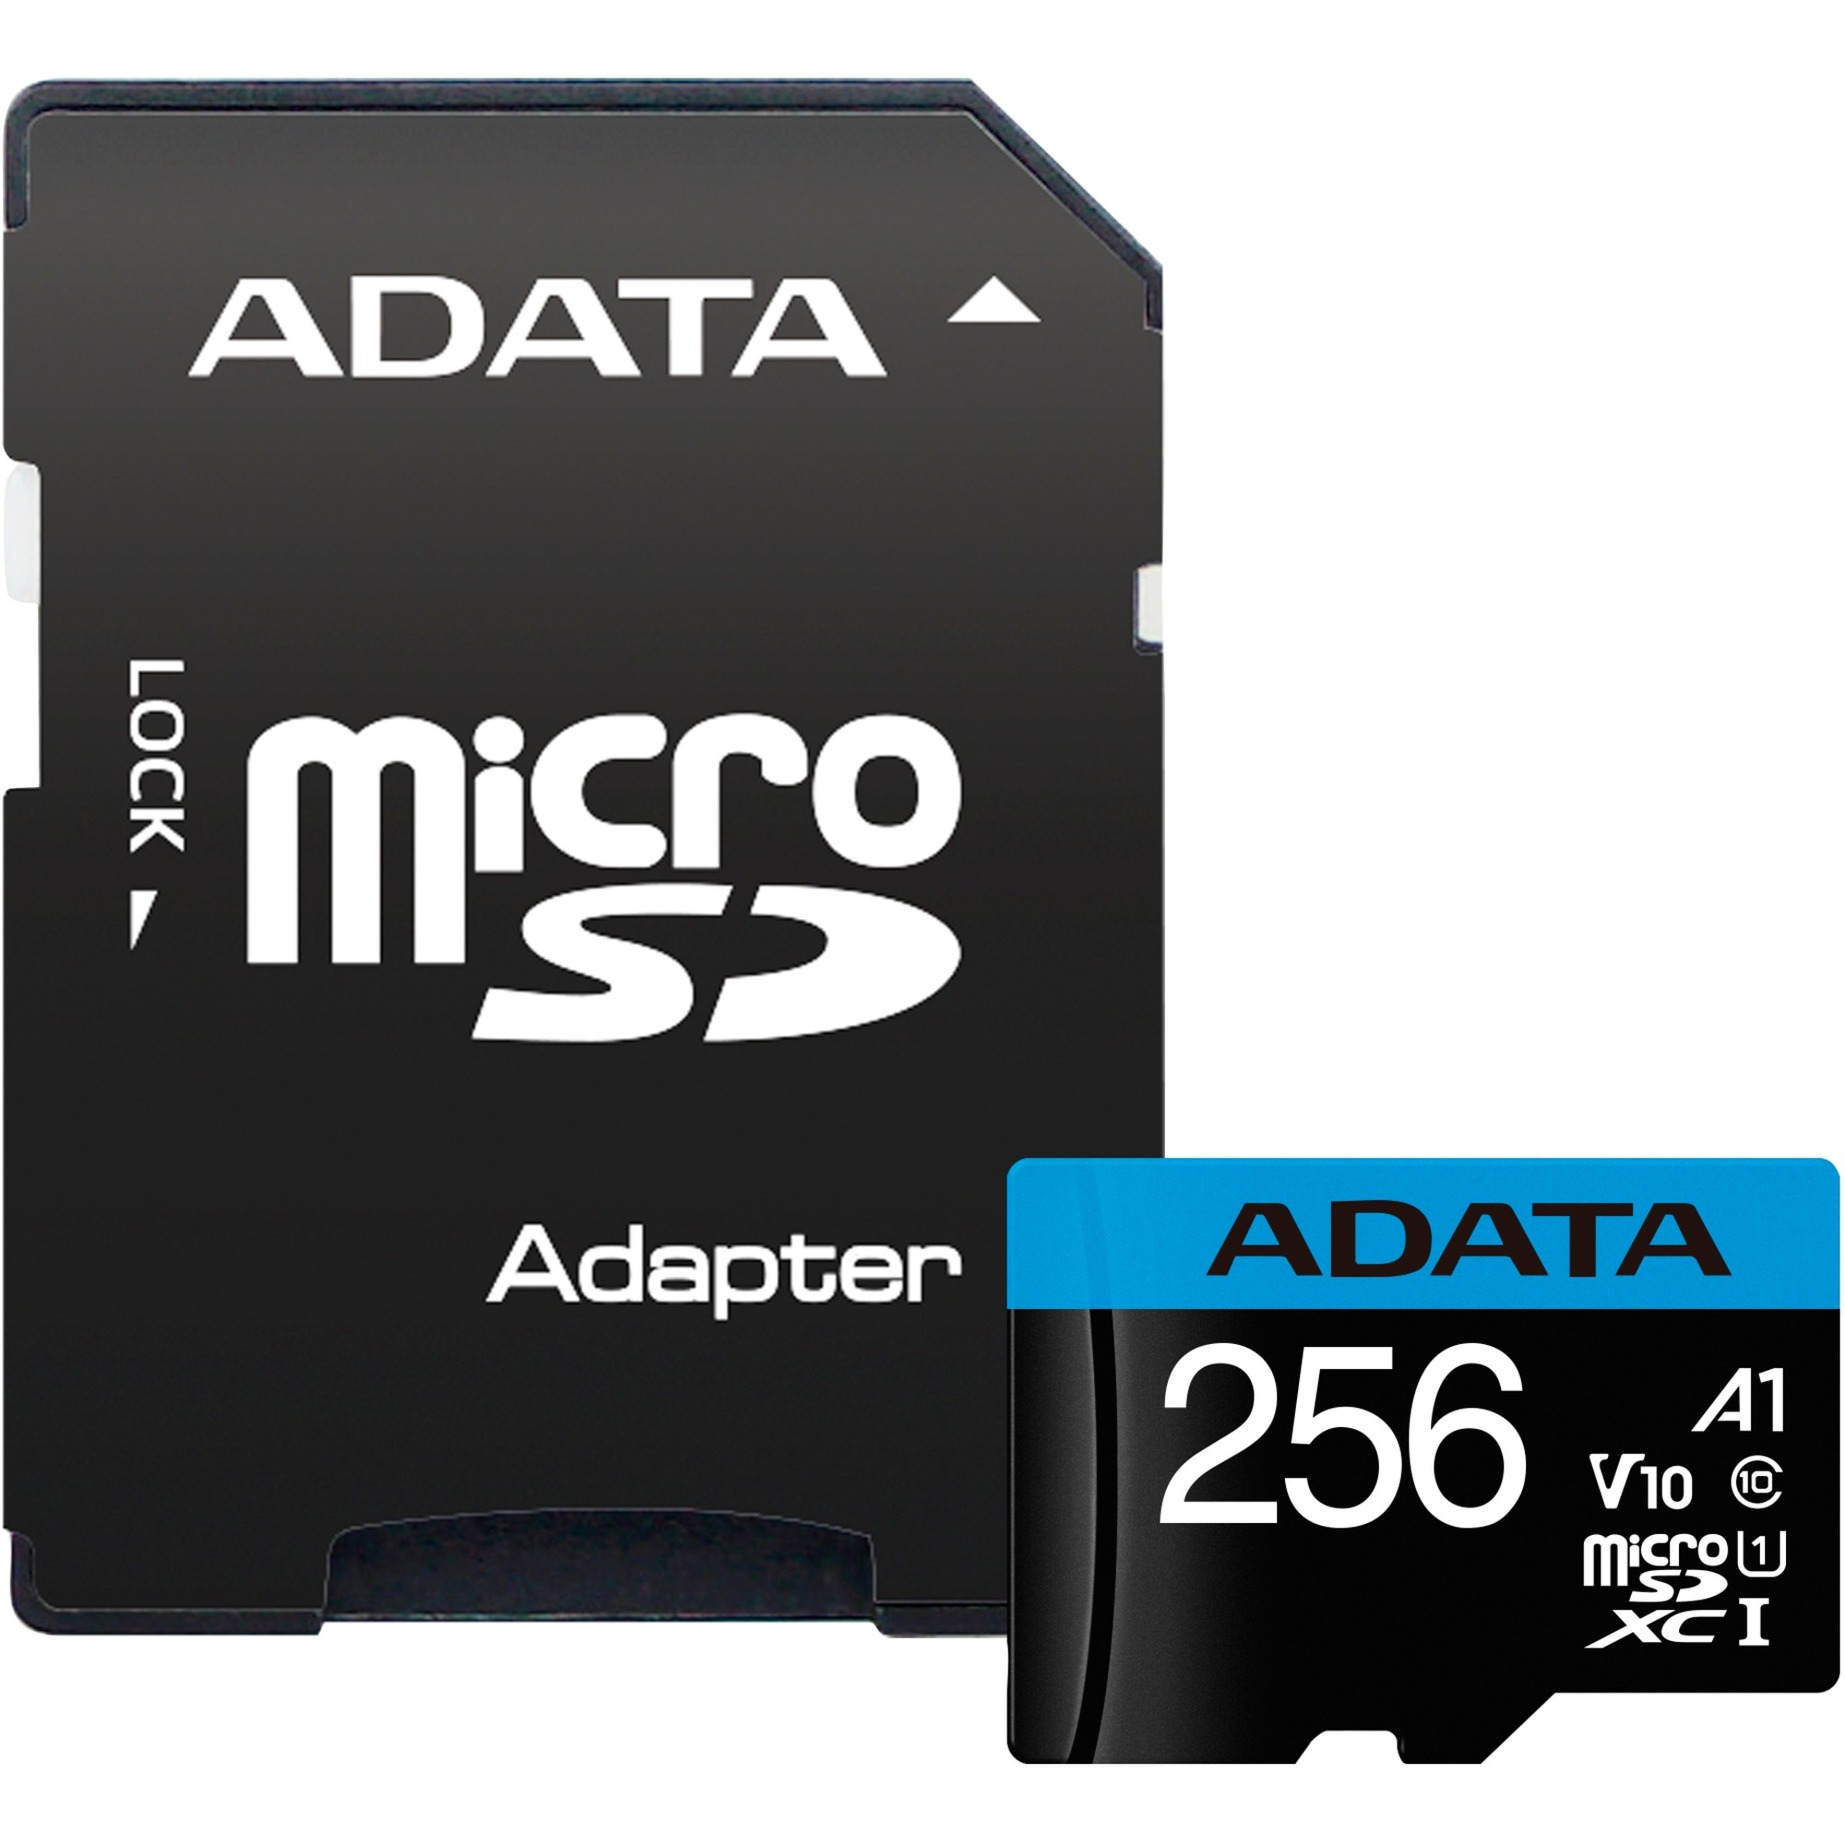 Image of Alternate - Premier 256 GB microSDXC, Speicherkarte online einkaufen bei Alternate